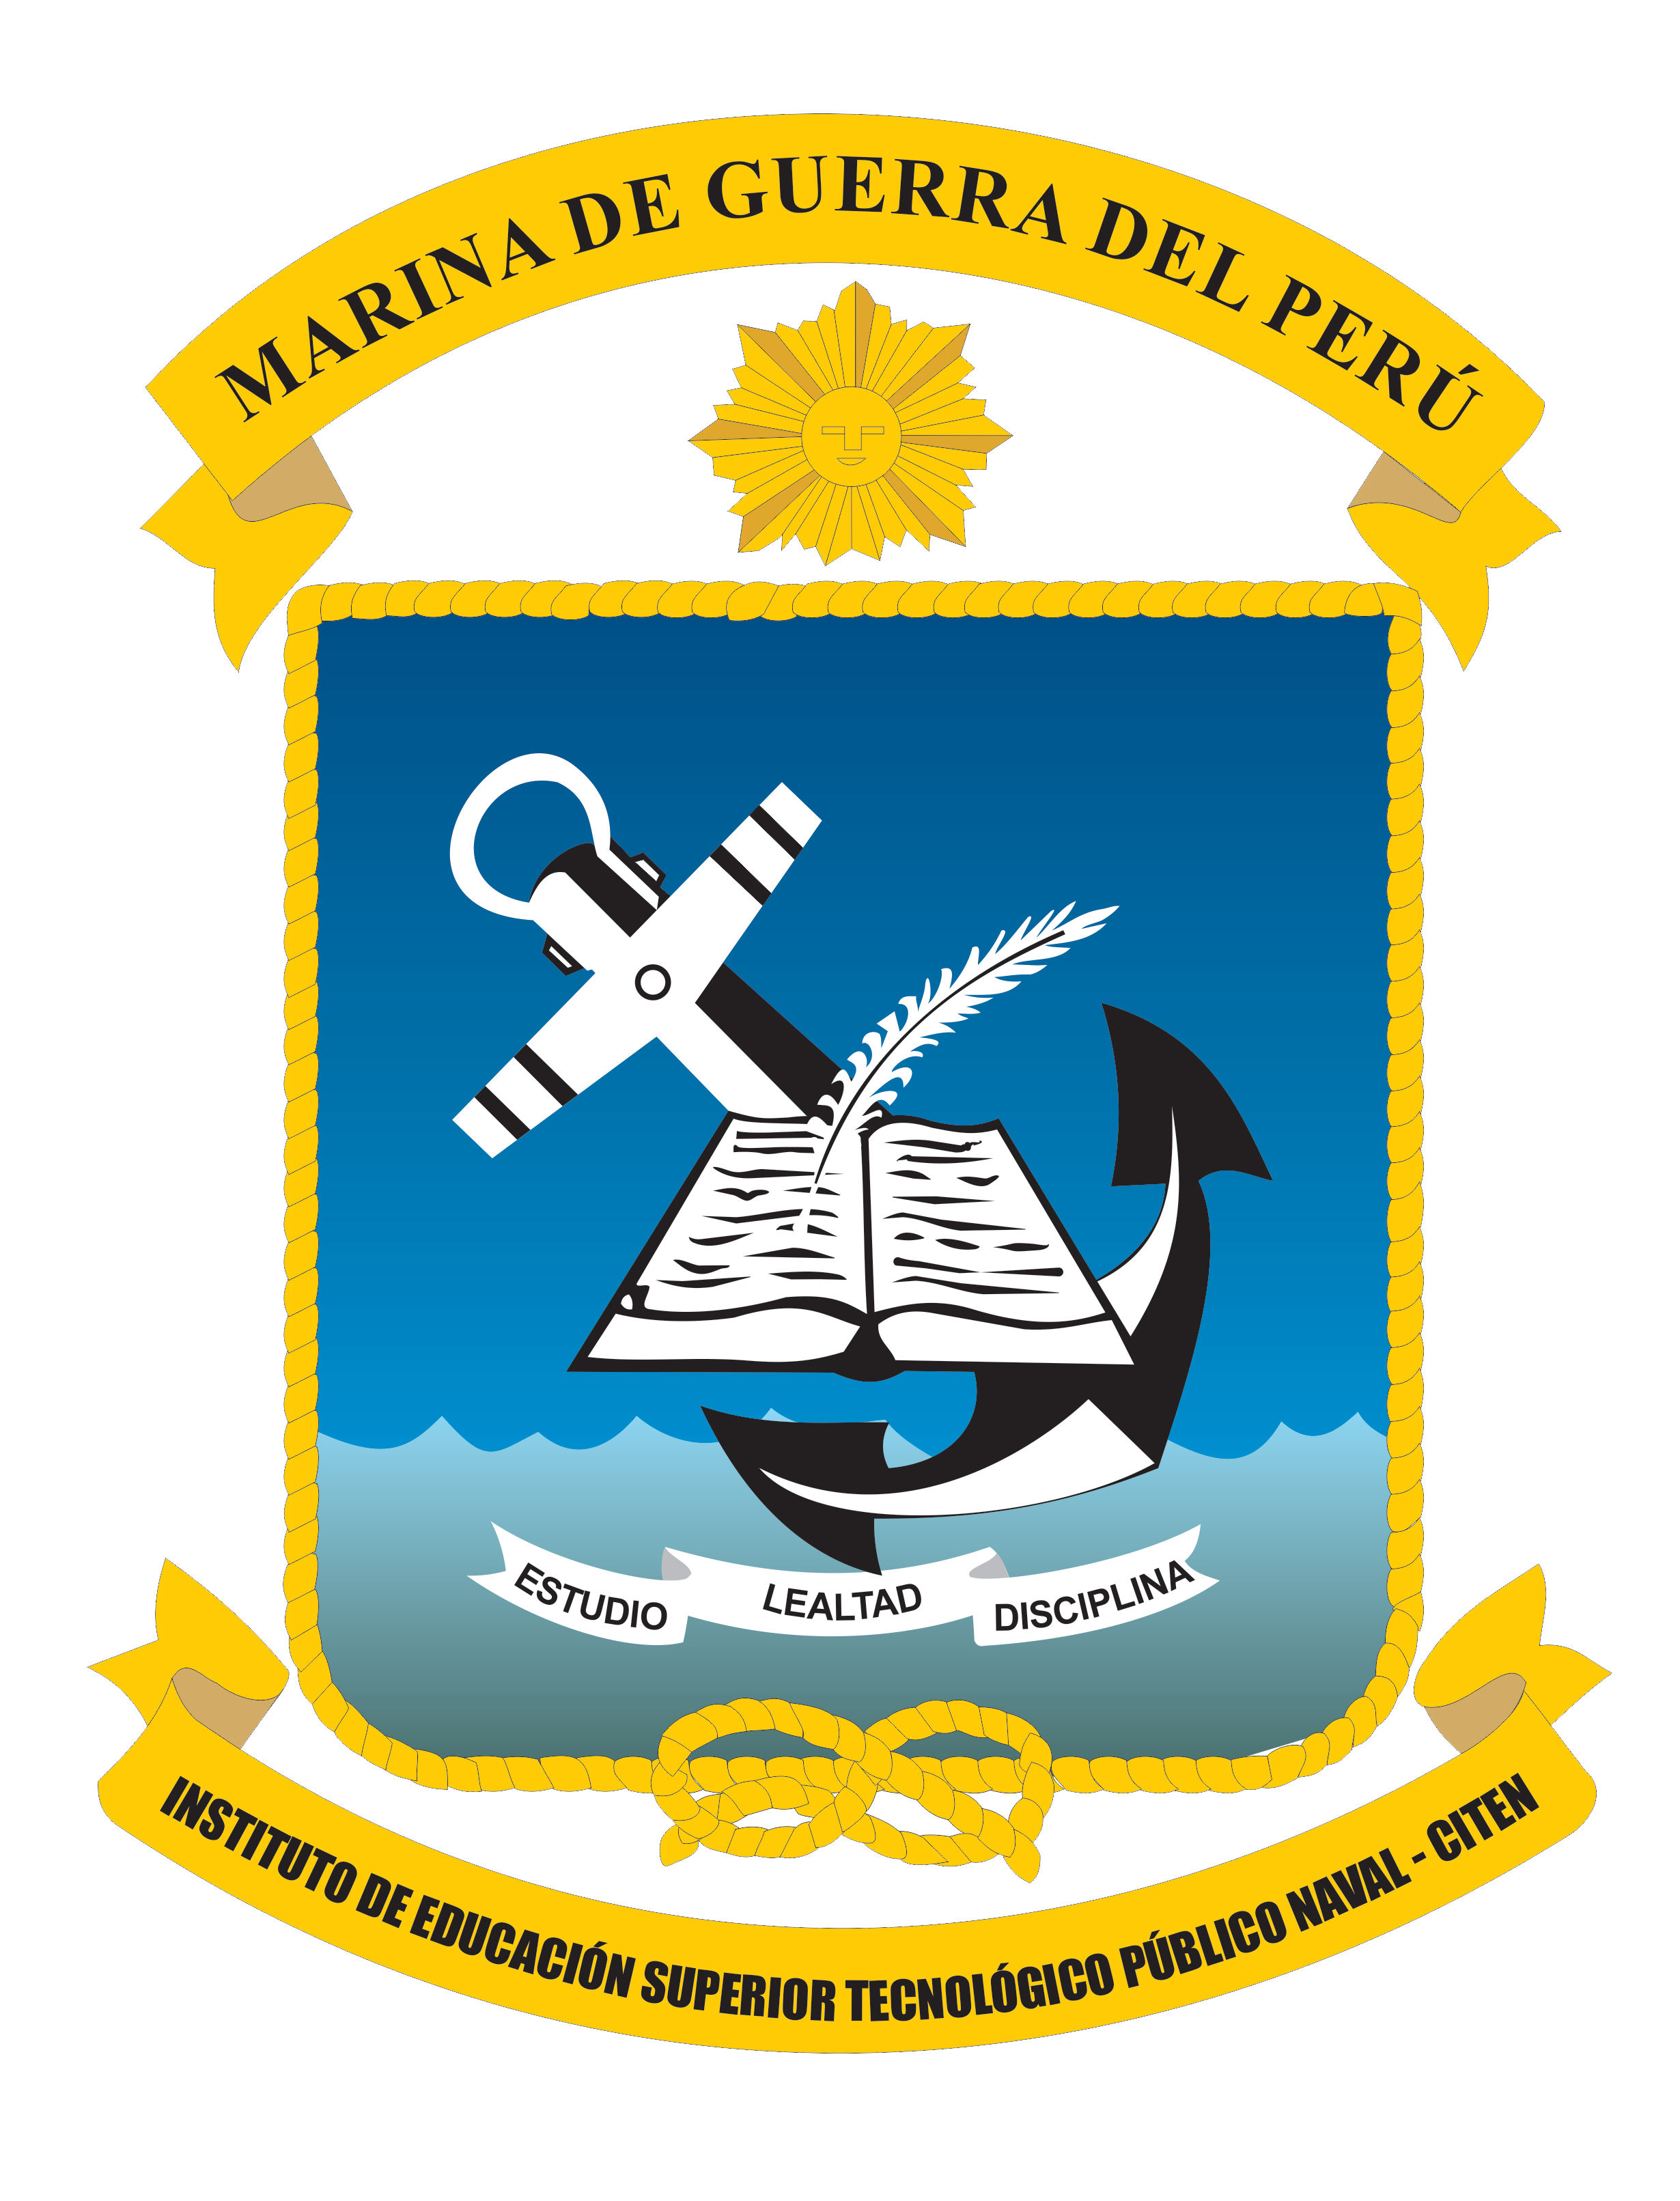 Instituto de Educación Superior Tecnológico Público Naval